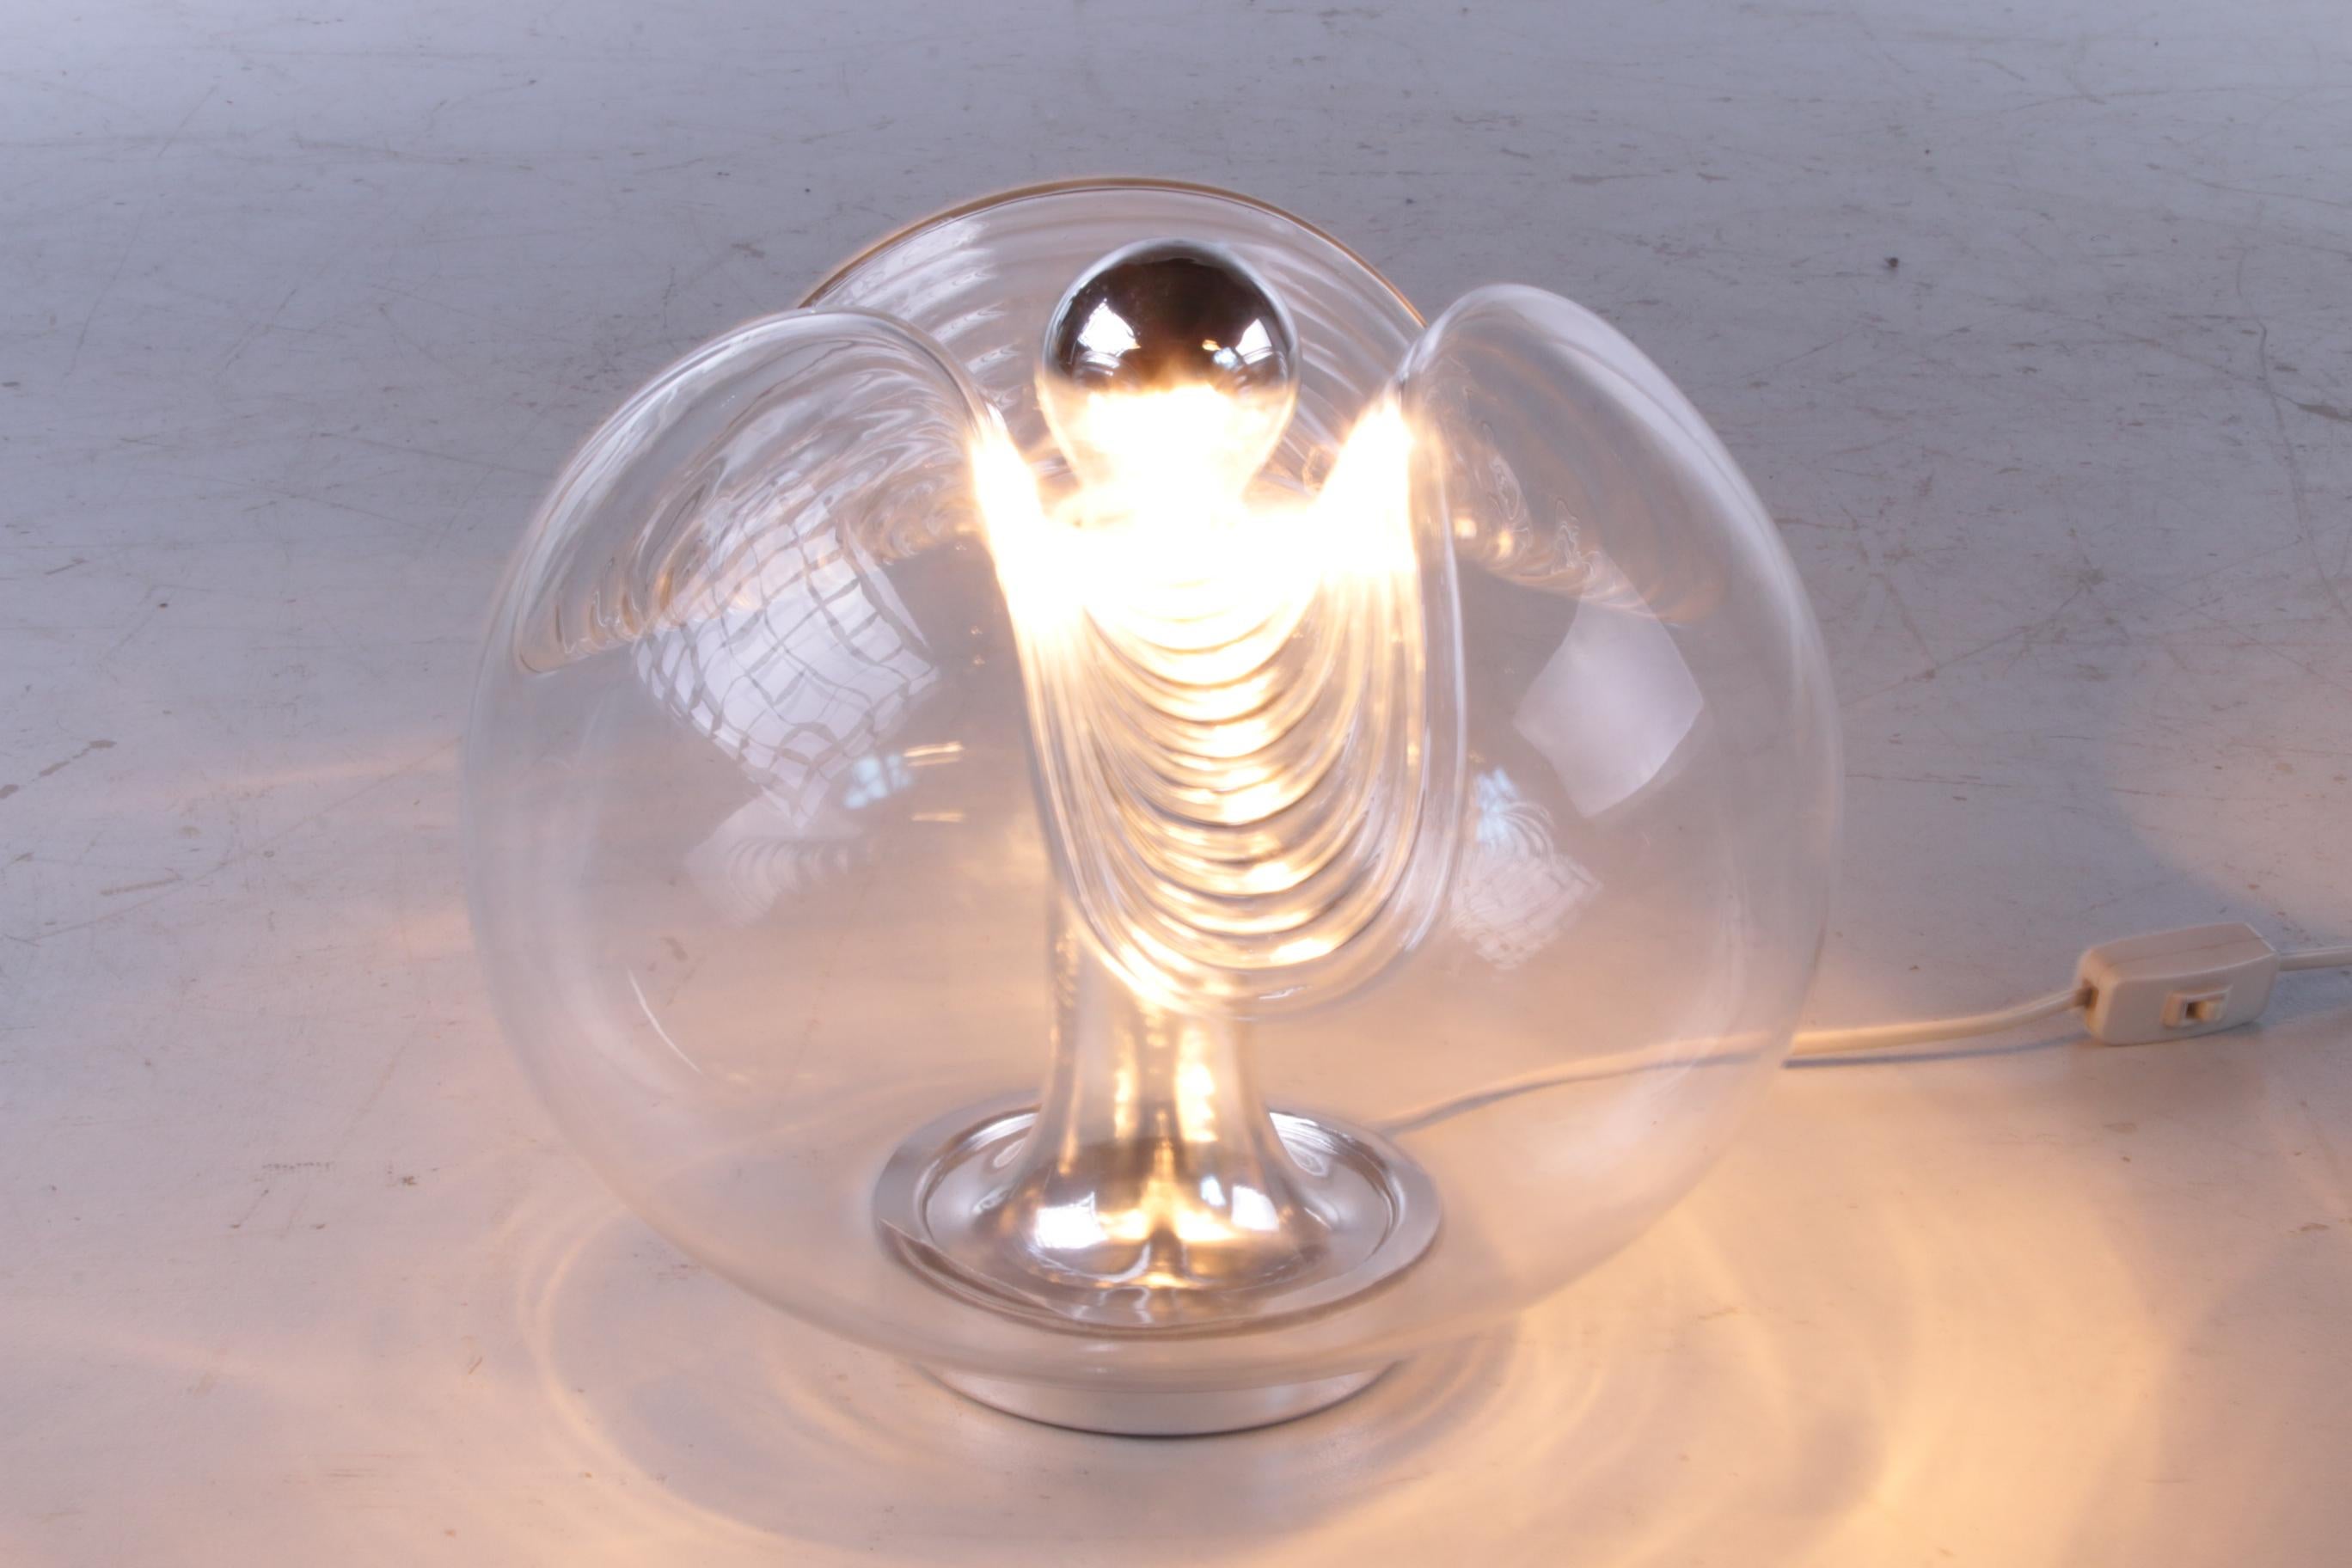 La lampe de table Wave unique de Peill & Putzler. La lampe a été conçue par l'équipe de Koch & Lowy en Allemagne vers les années 1960.

L'abat-jour est en verre transparent avec un motif de vagues intéressant qui donne l'impression que la lampe